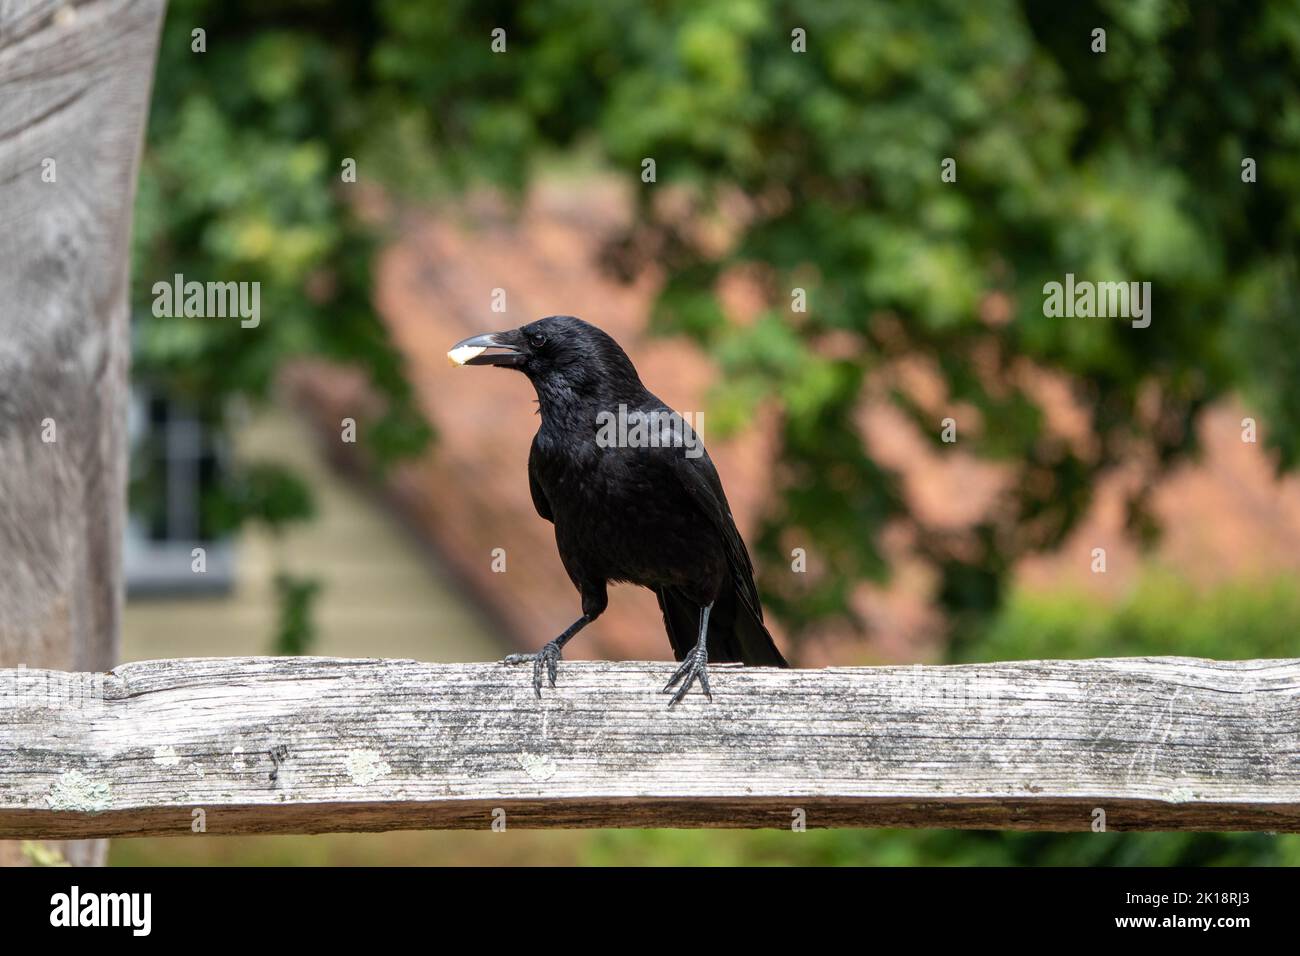 le corbeau-carrion corvus corone oiseau de passereau de la famille des corvidés perché sur une clôture avec de la nourriture dans le bec et un arrière-plan flou Banque D'Images